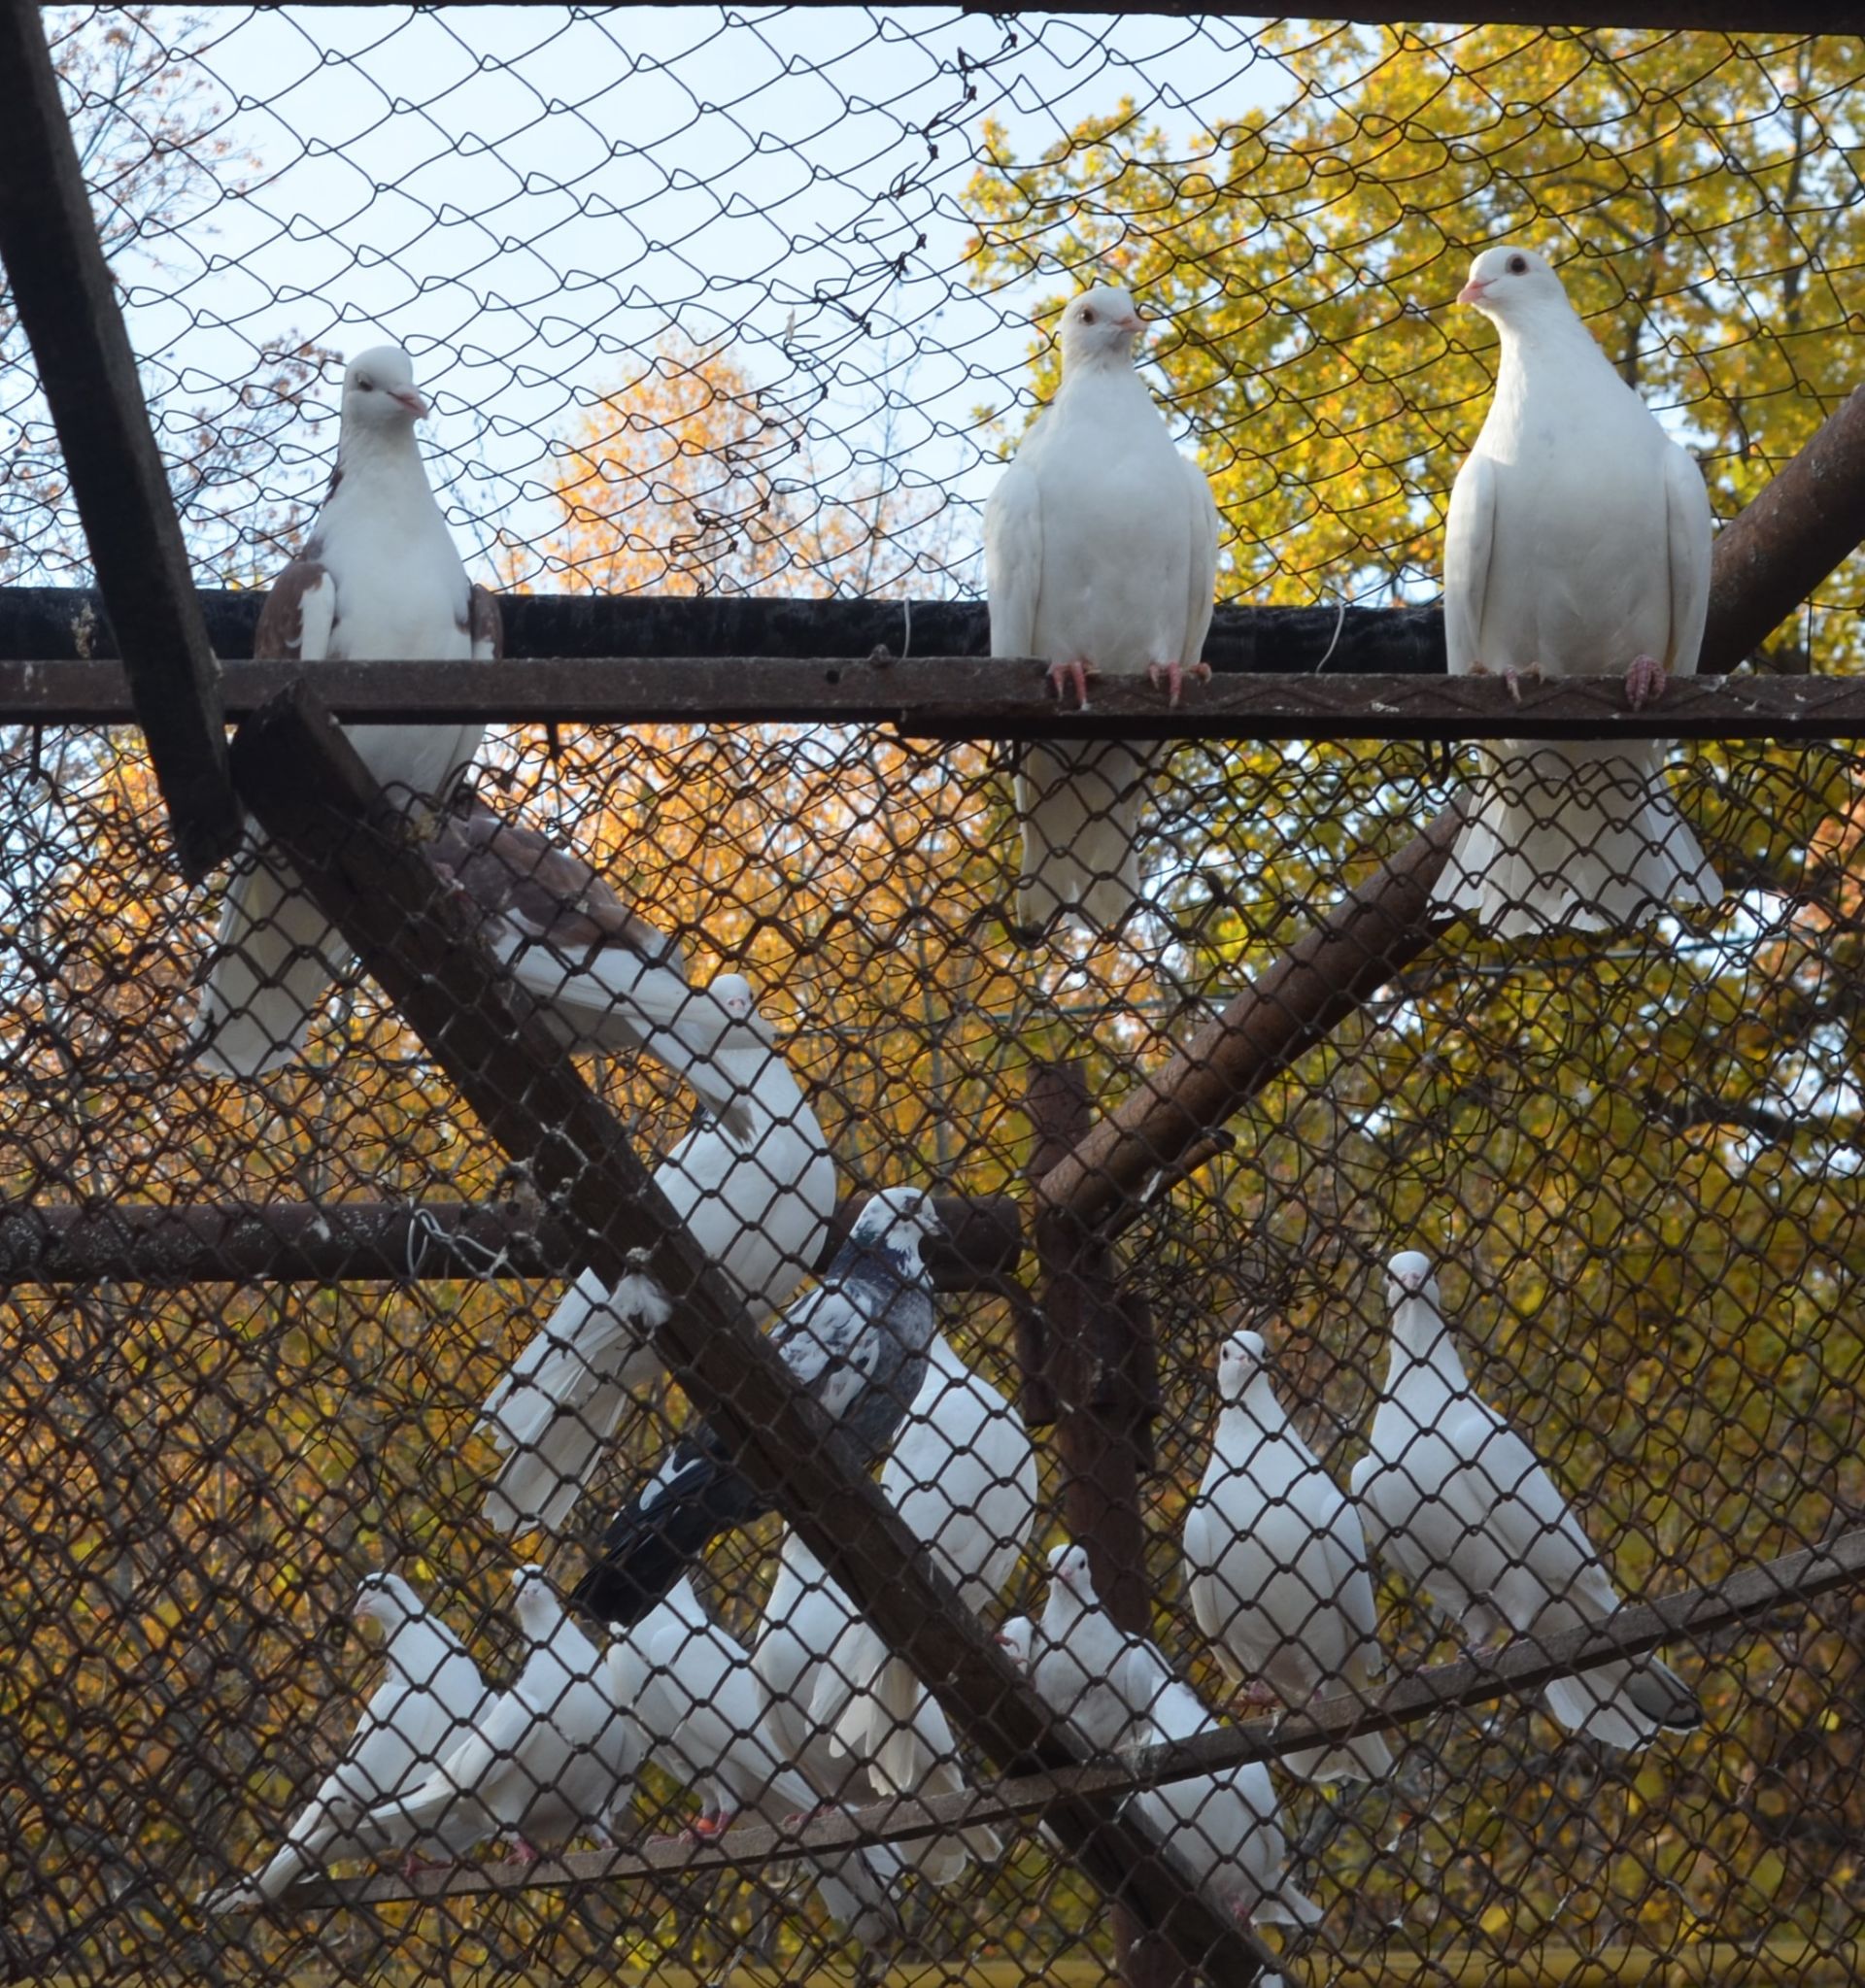 Бавлинец – разводчик голубей знает как обеспечить птицам комфорт